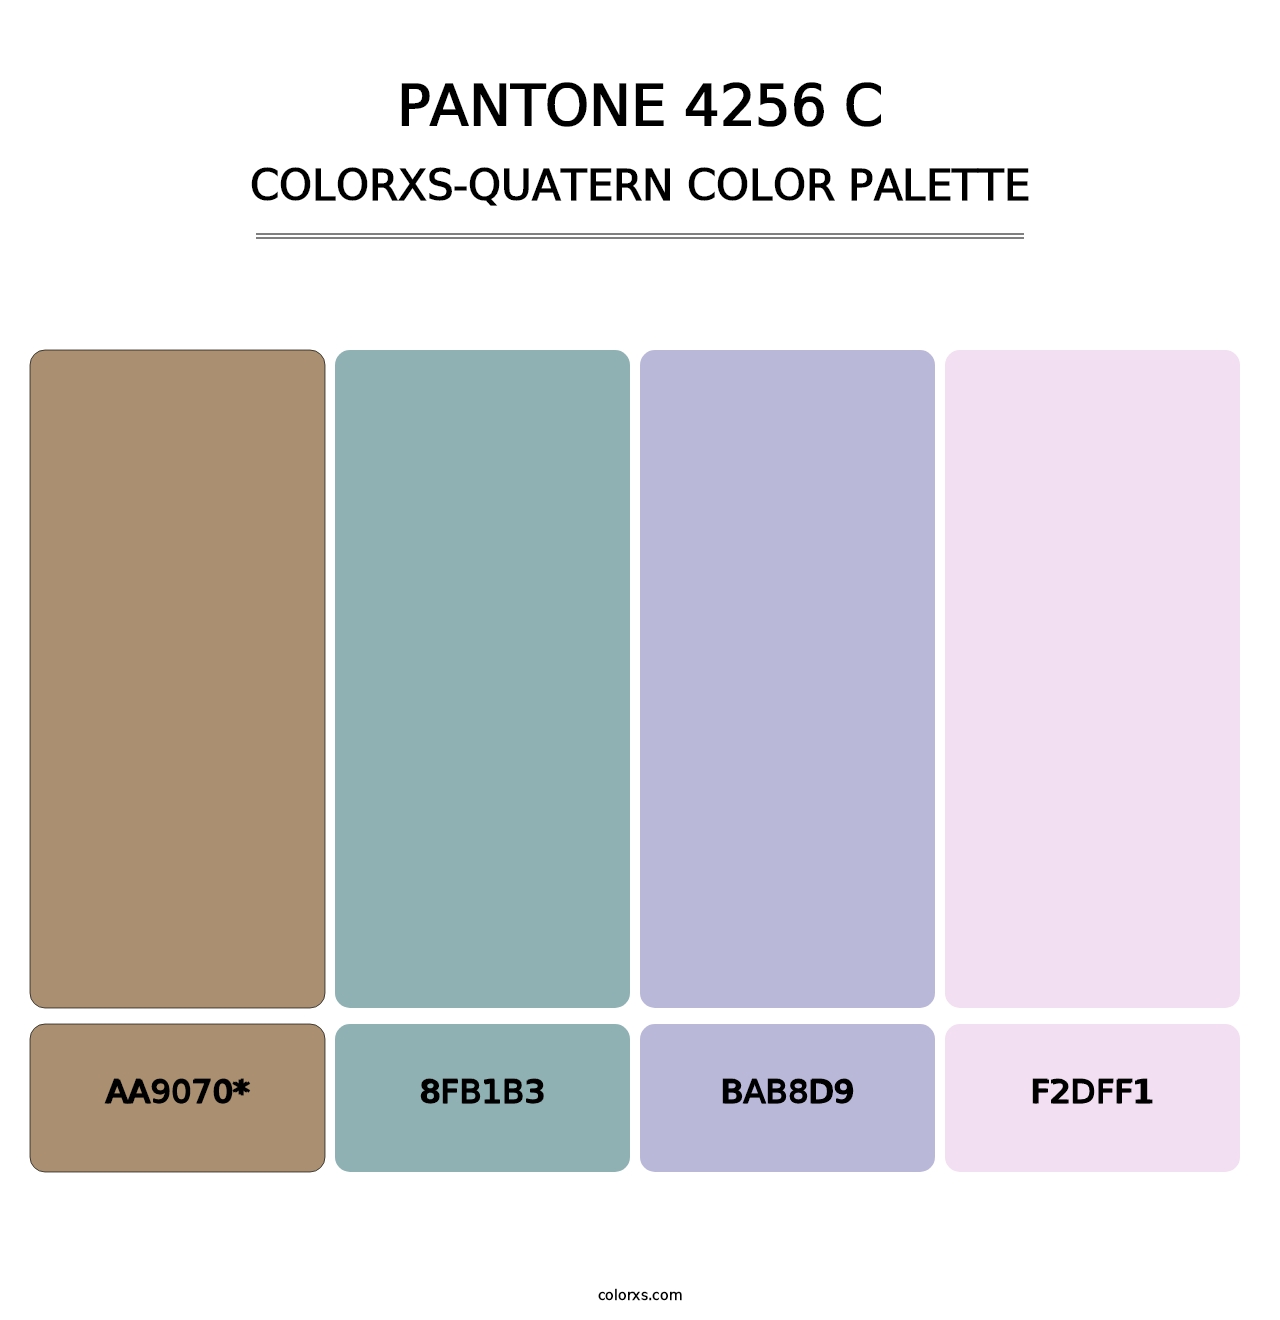 PANTONE 4256 C - Colorxs Quatern Palette